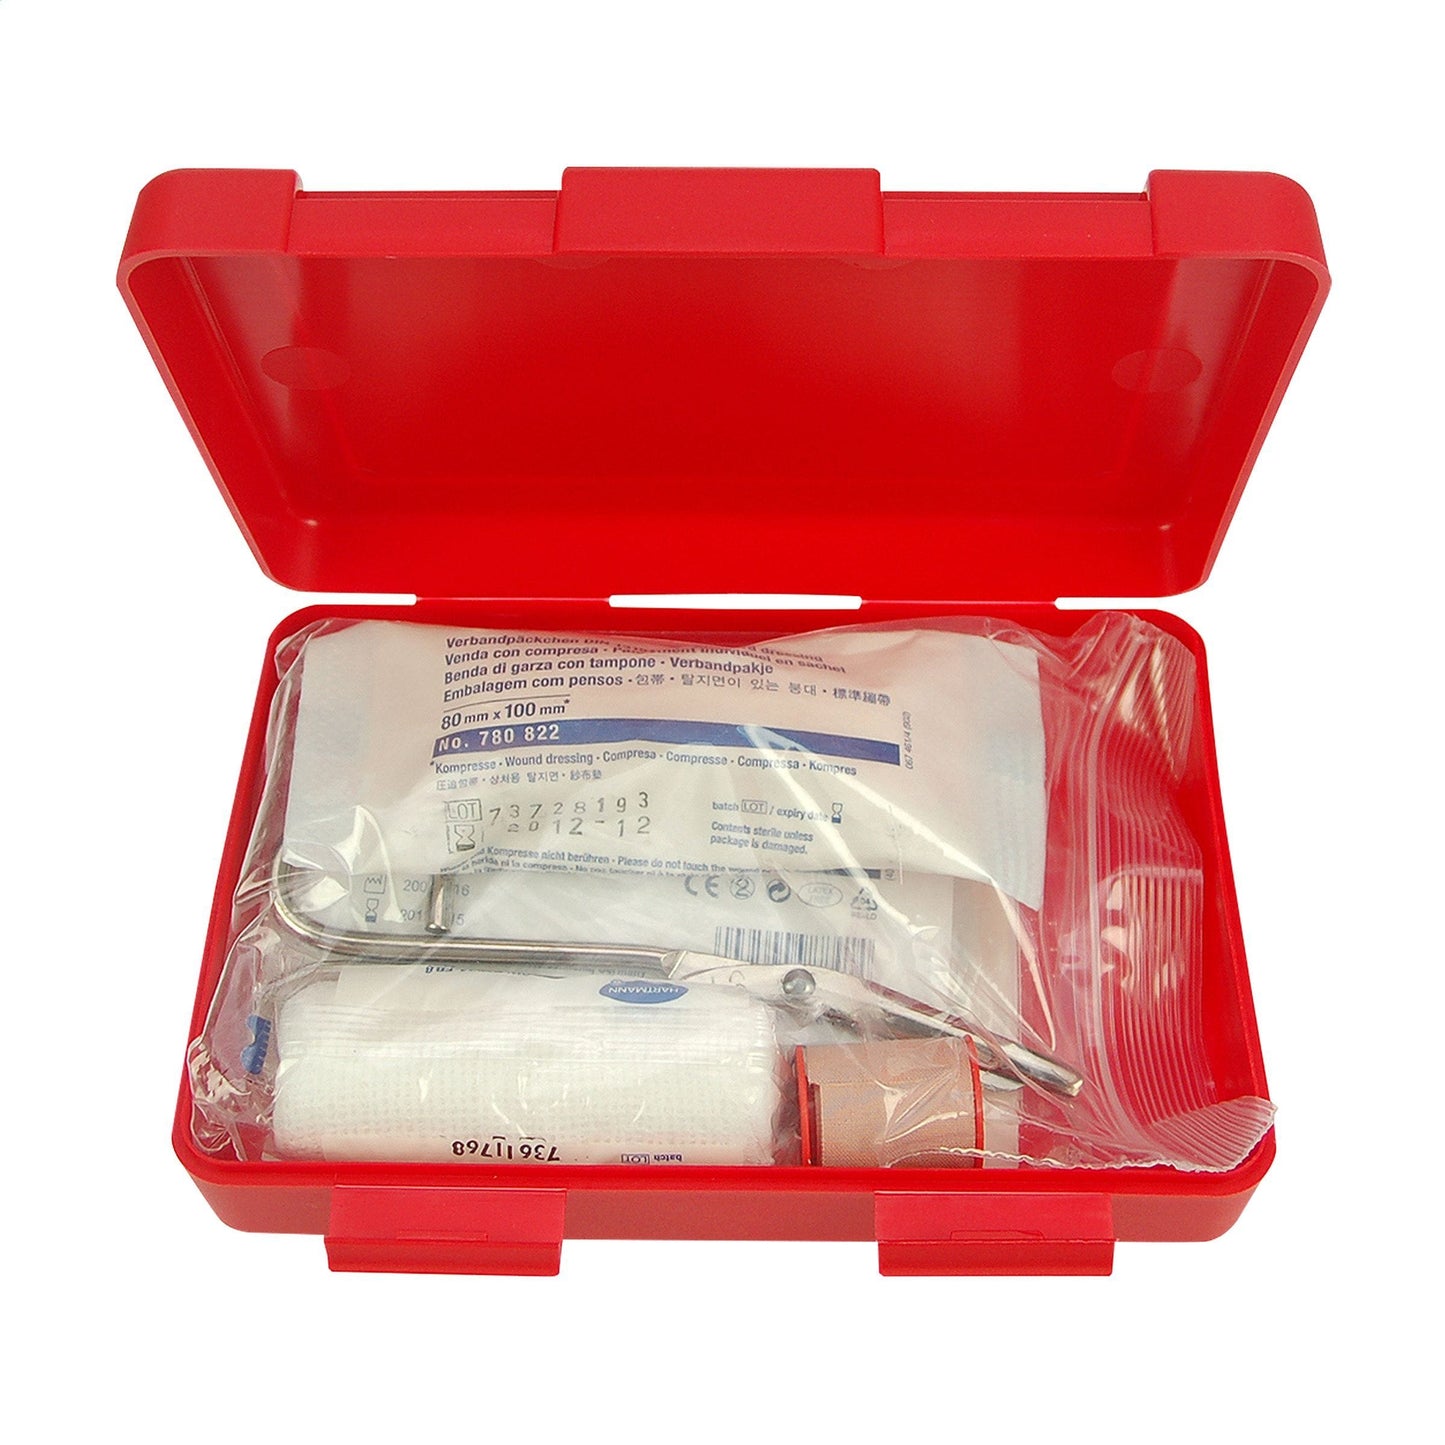 First Aid Kit Box Large Verbandskasten - WERBE-WELT.SHOP